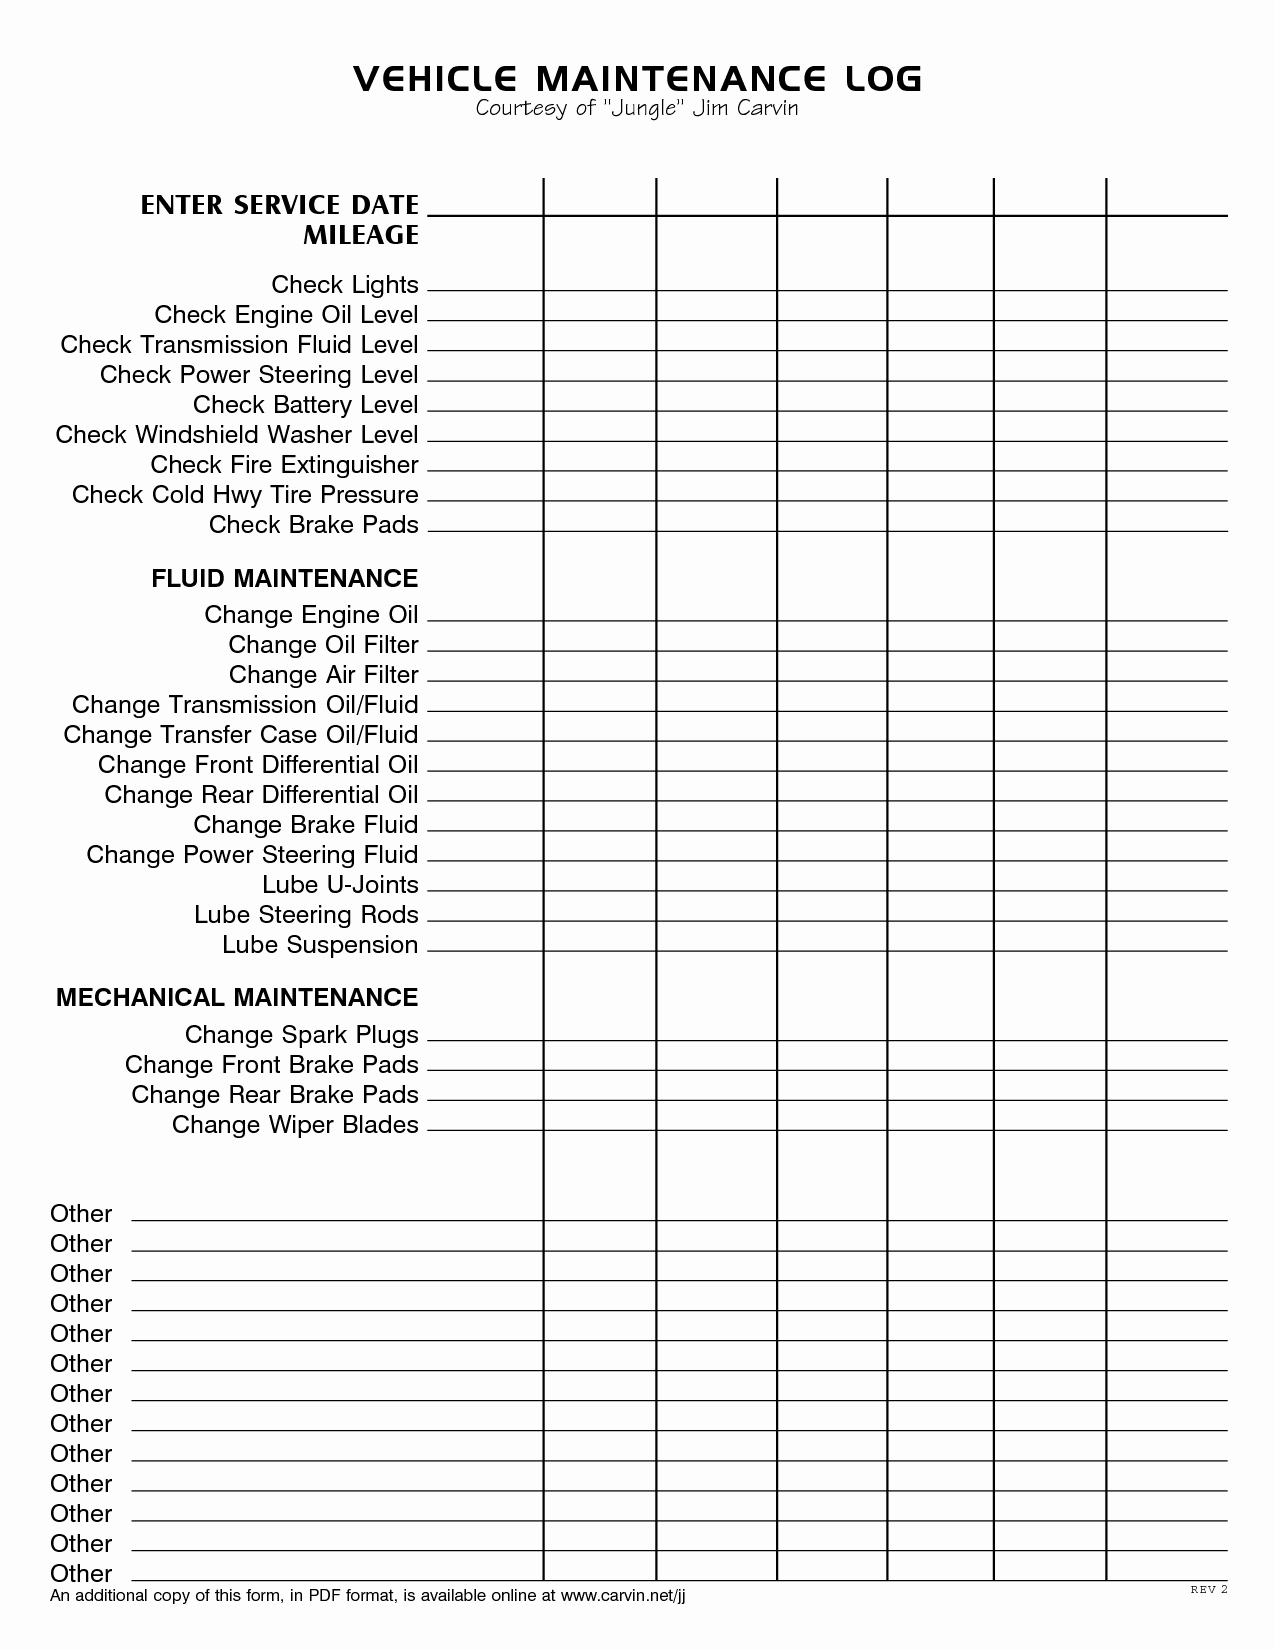 Vehicle Maintenance Checklist Template Unique Vehicle Maintenance Log Book Template